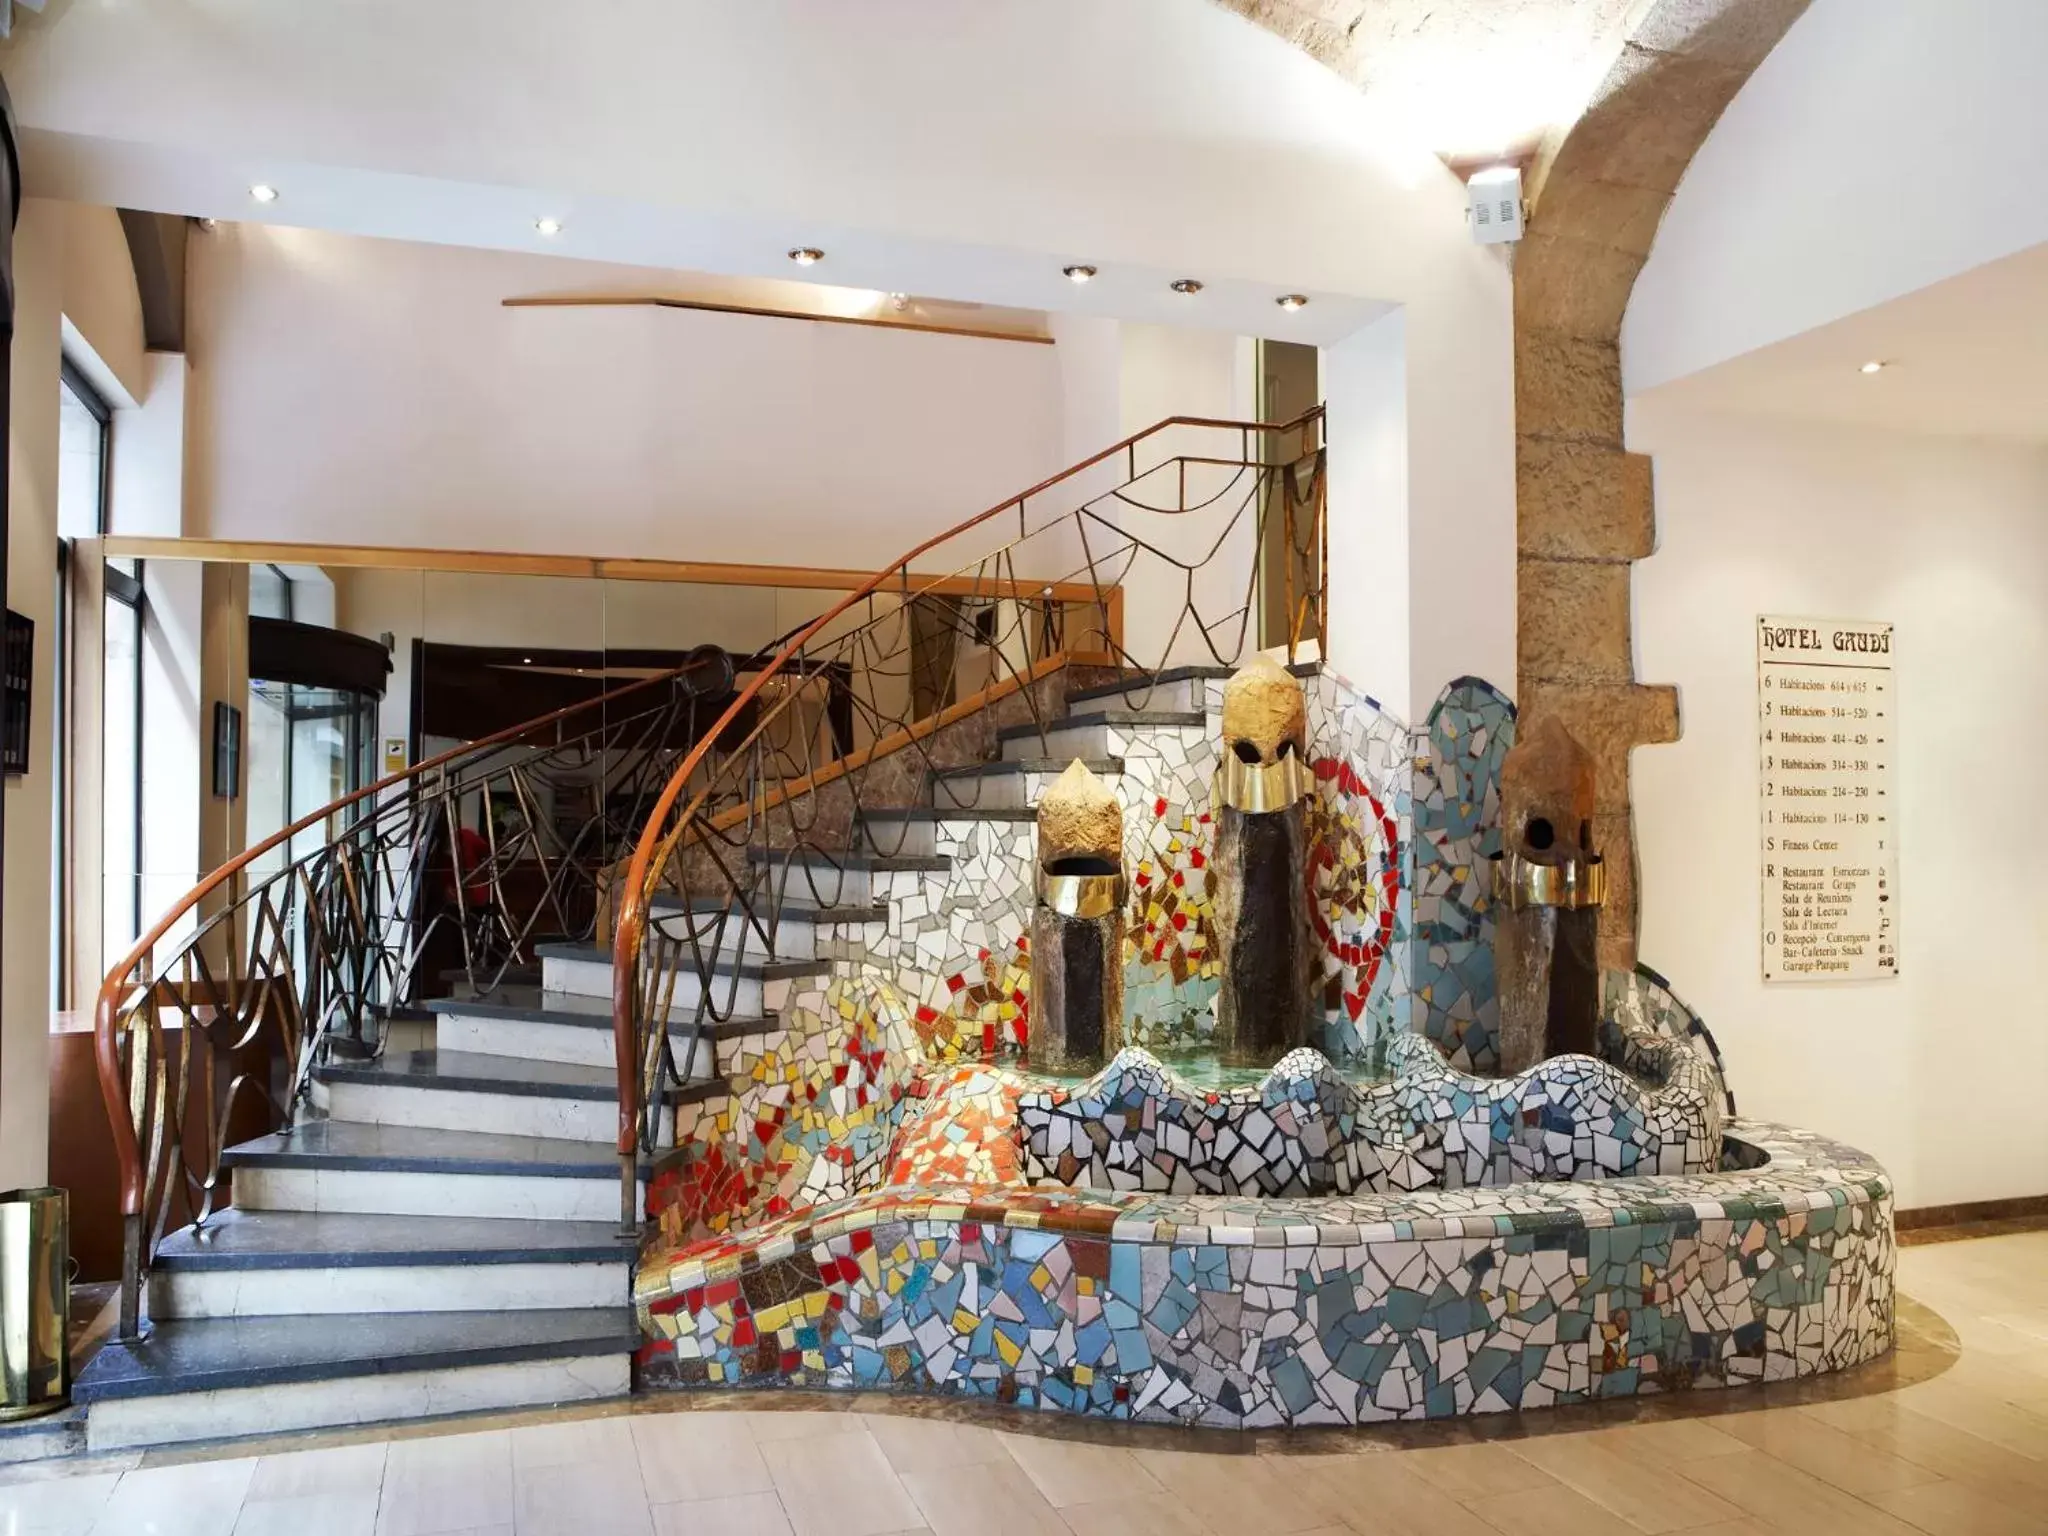 Lobby or reception in Gaudi Hotel